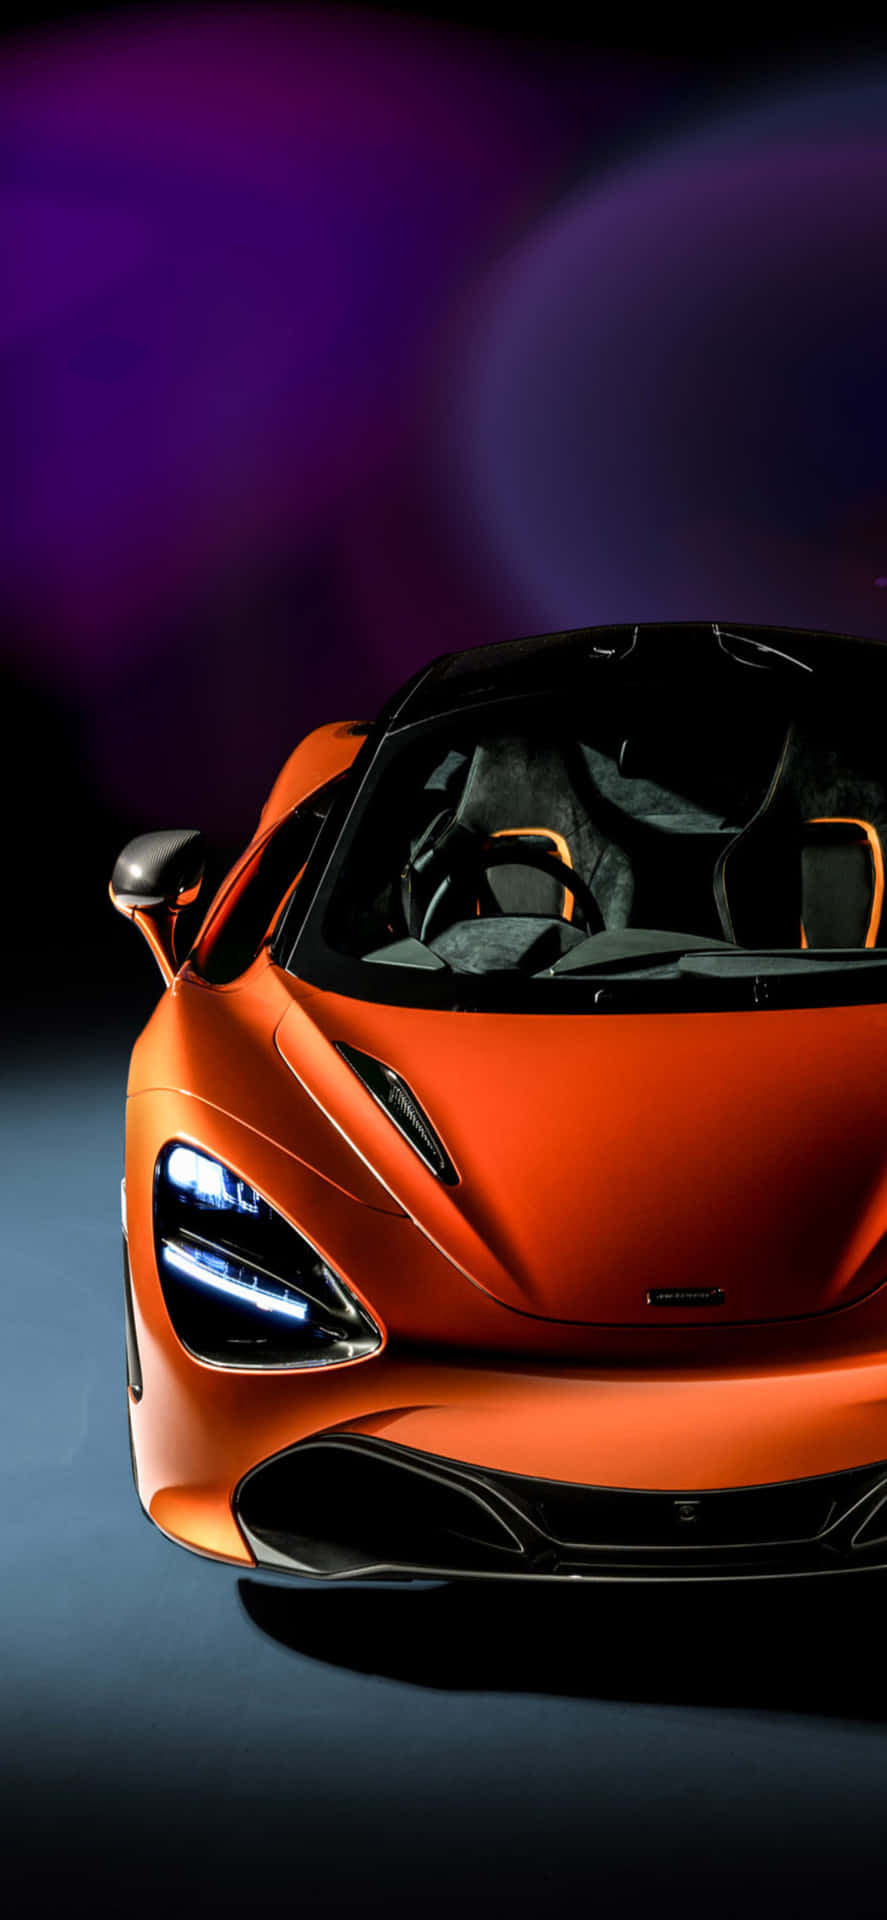 Iphone X Mclaren 720s Orange Sports Car Background